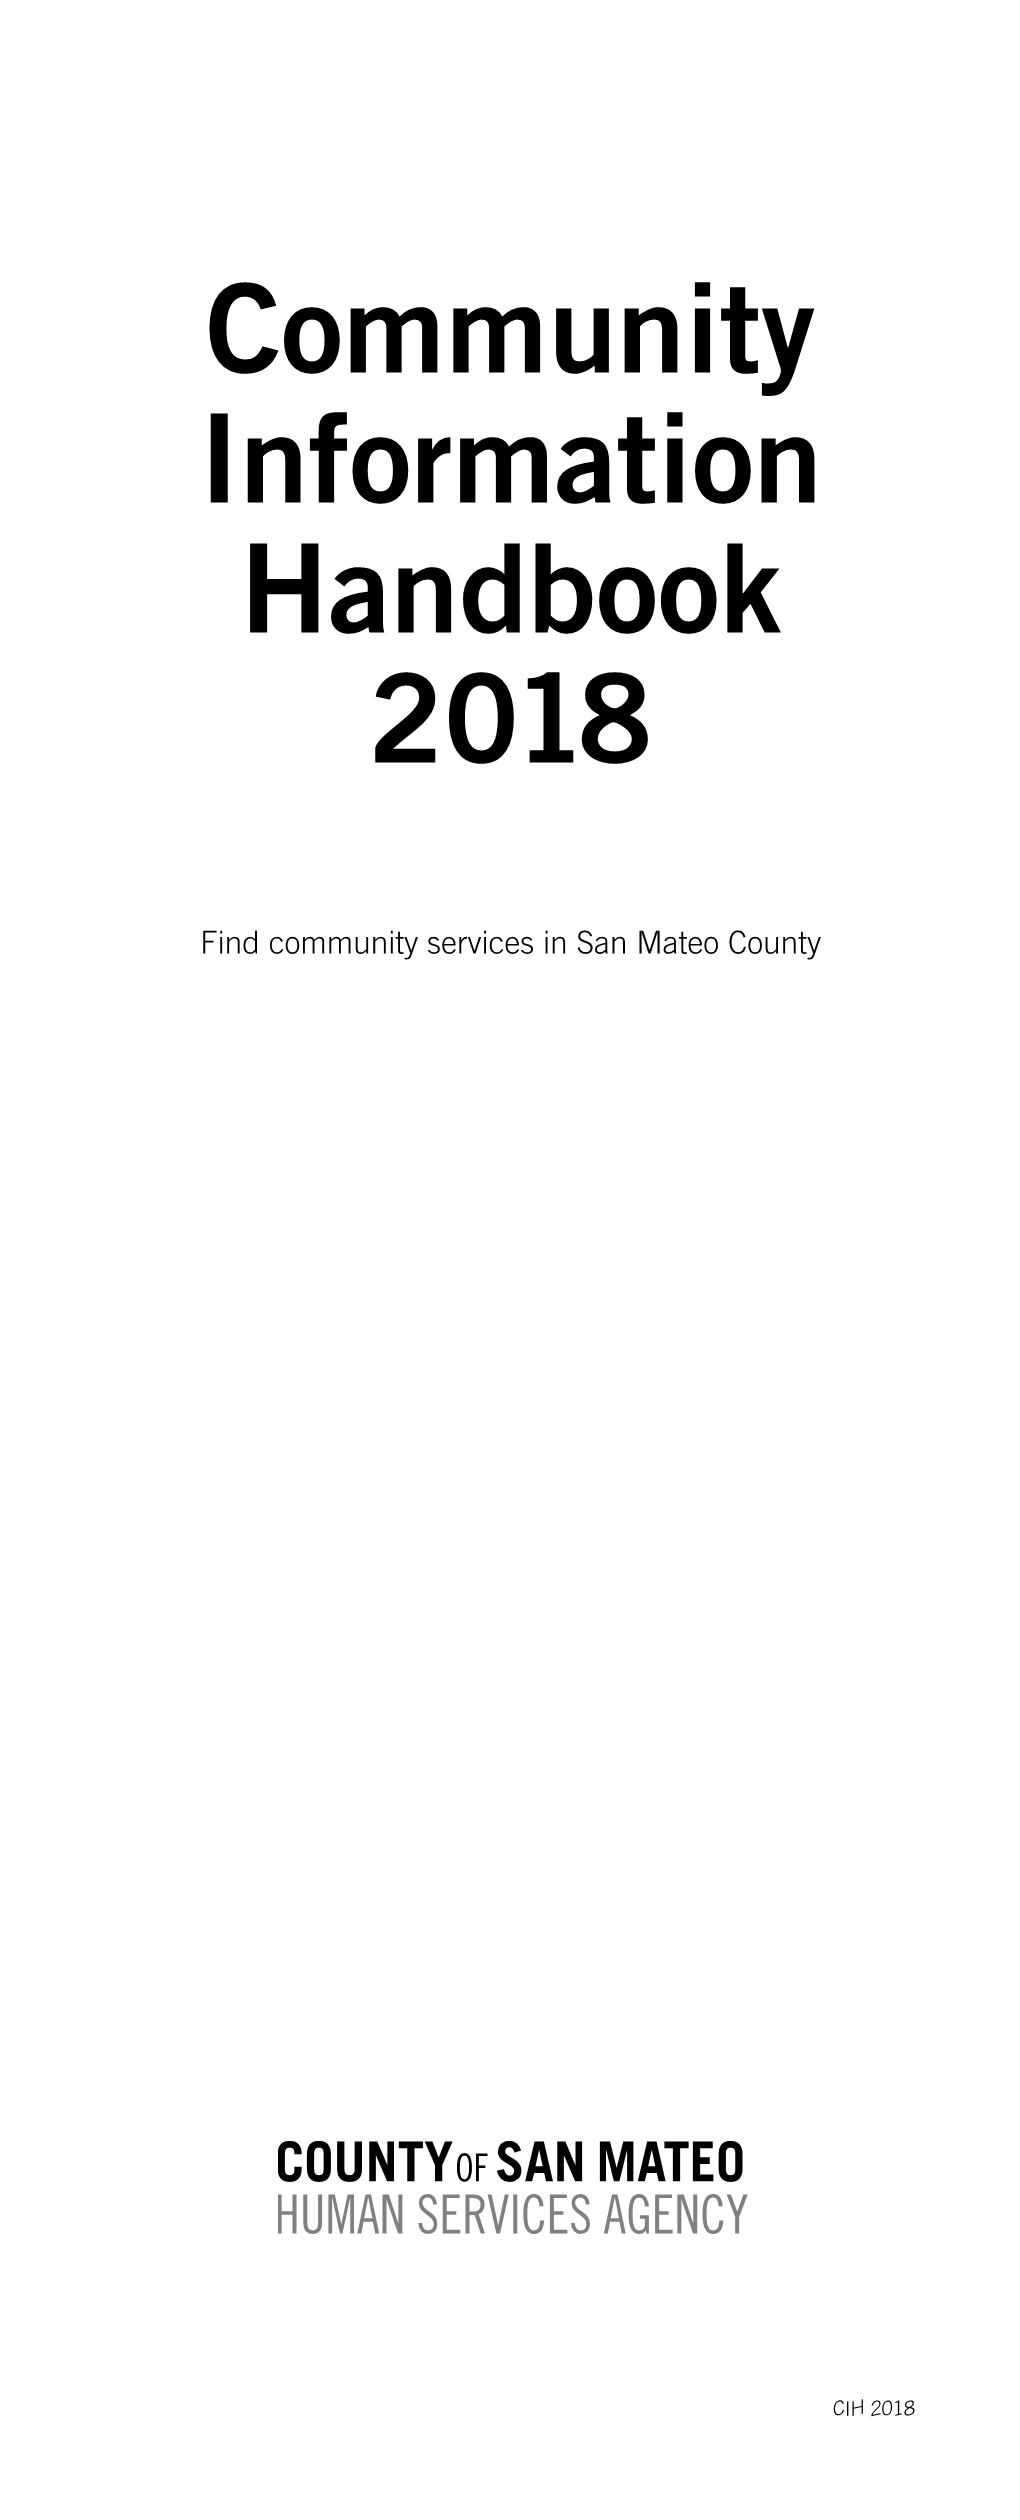 Community Information Handbook 2018